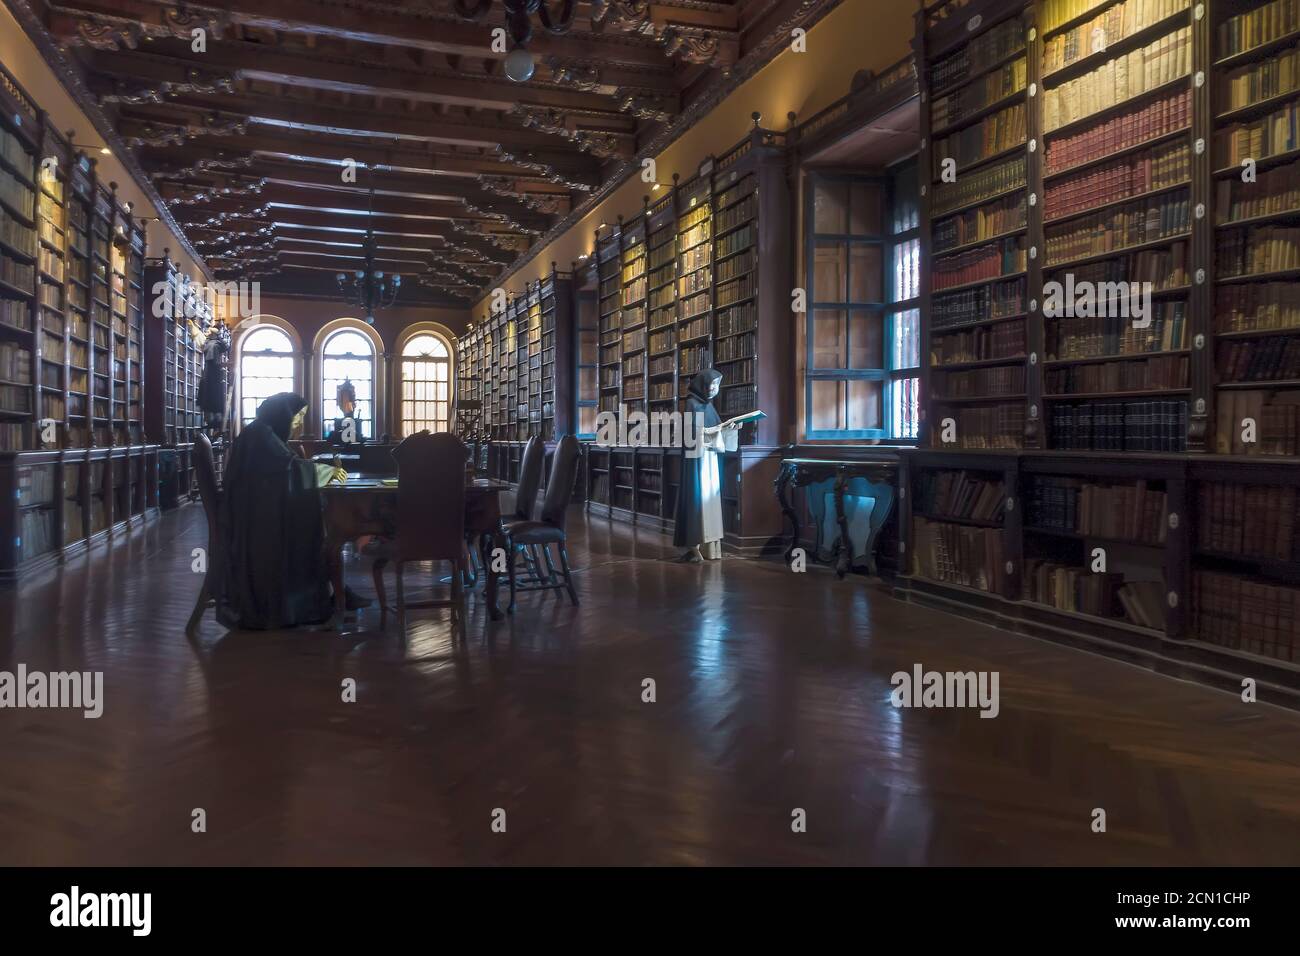 Modèles de moines lisant un manuscrit dans l'ancienne bibliothèque du couvent de Saint-Domingue, Lima, Pérou Banque D'Images